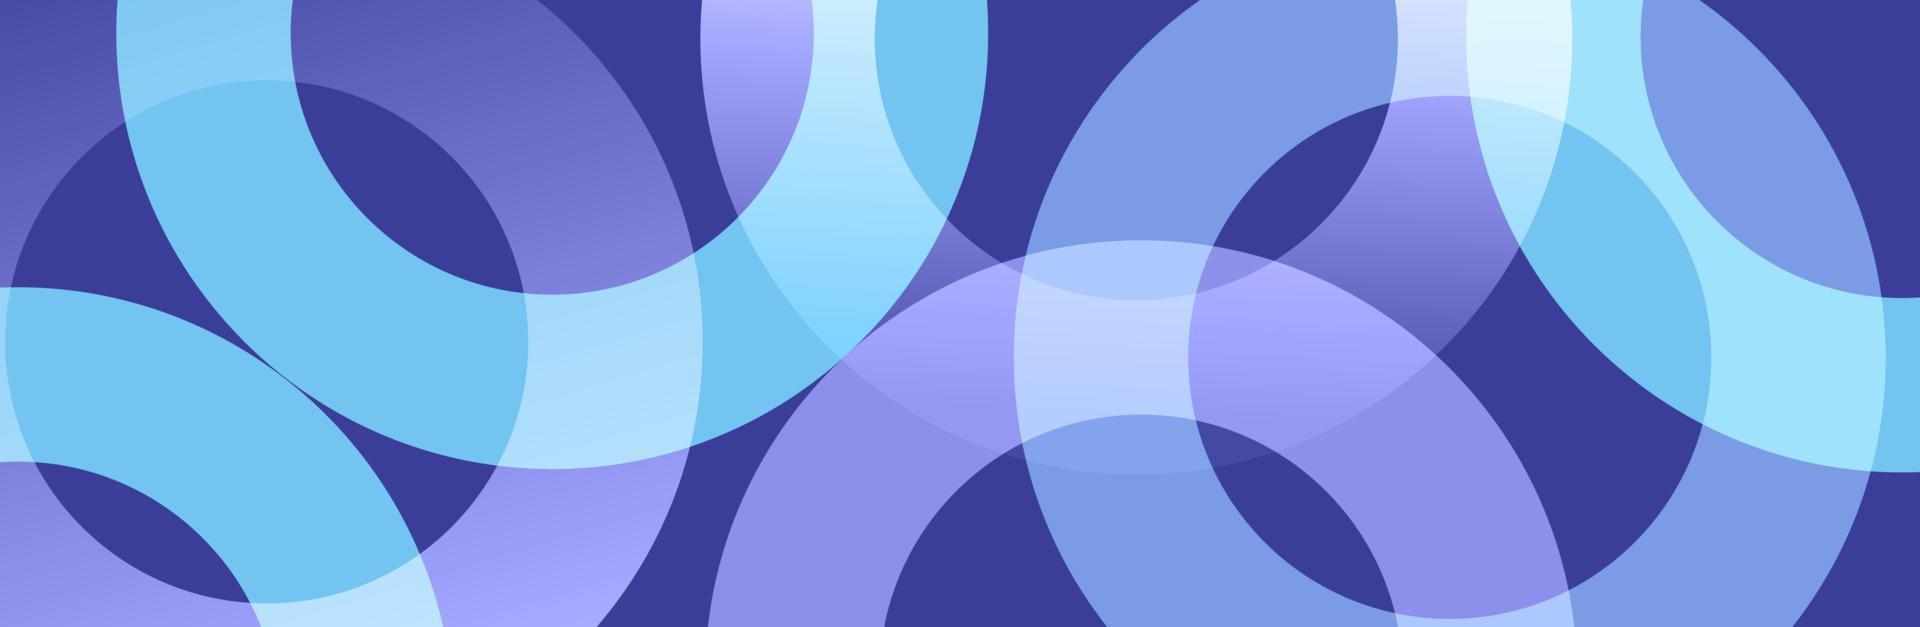 abstrakter lila und blauer Kreis formt Hintergrunddesign vektor